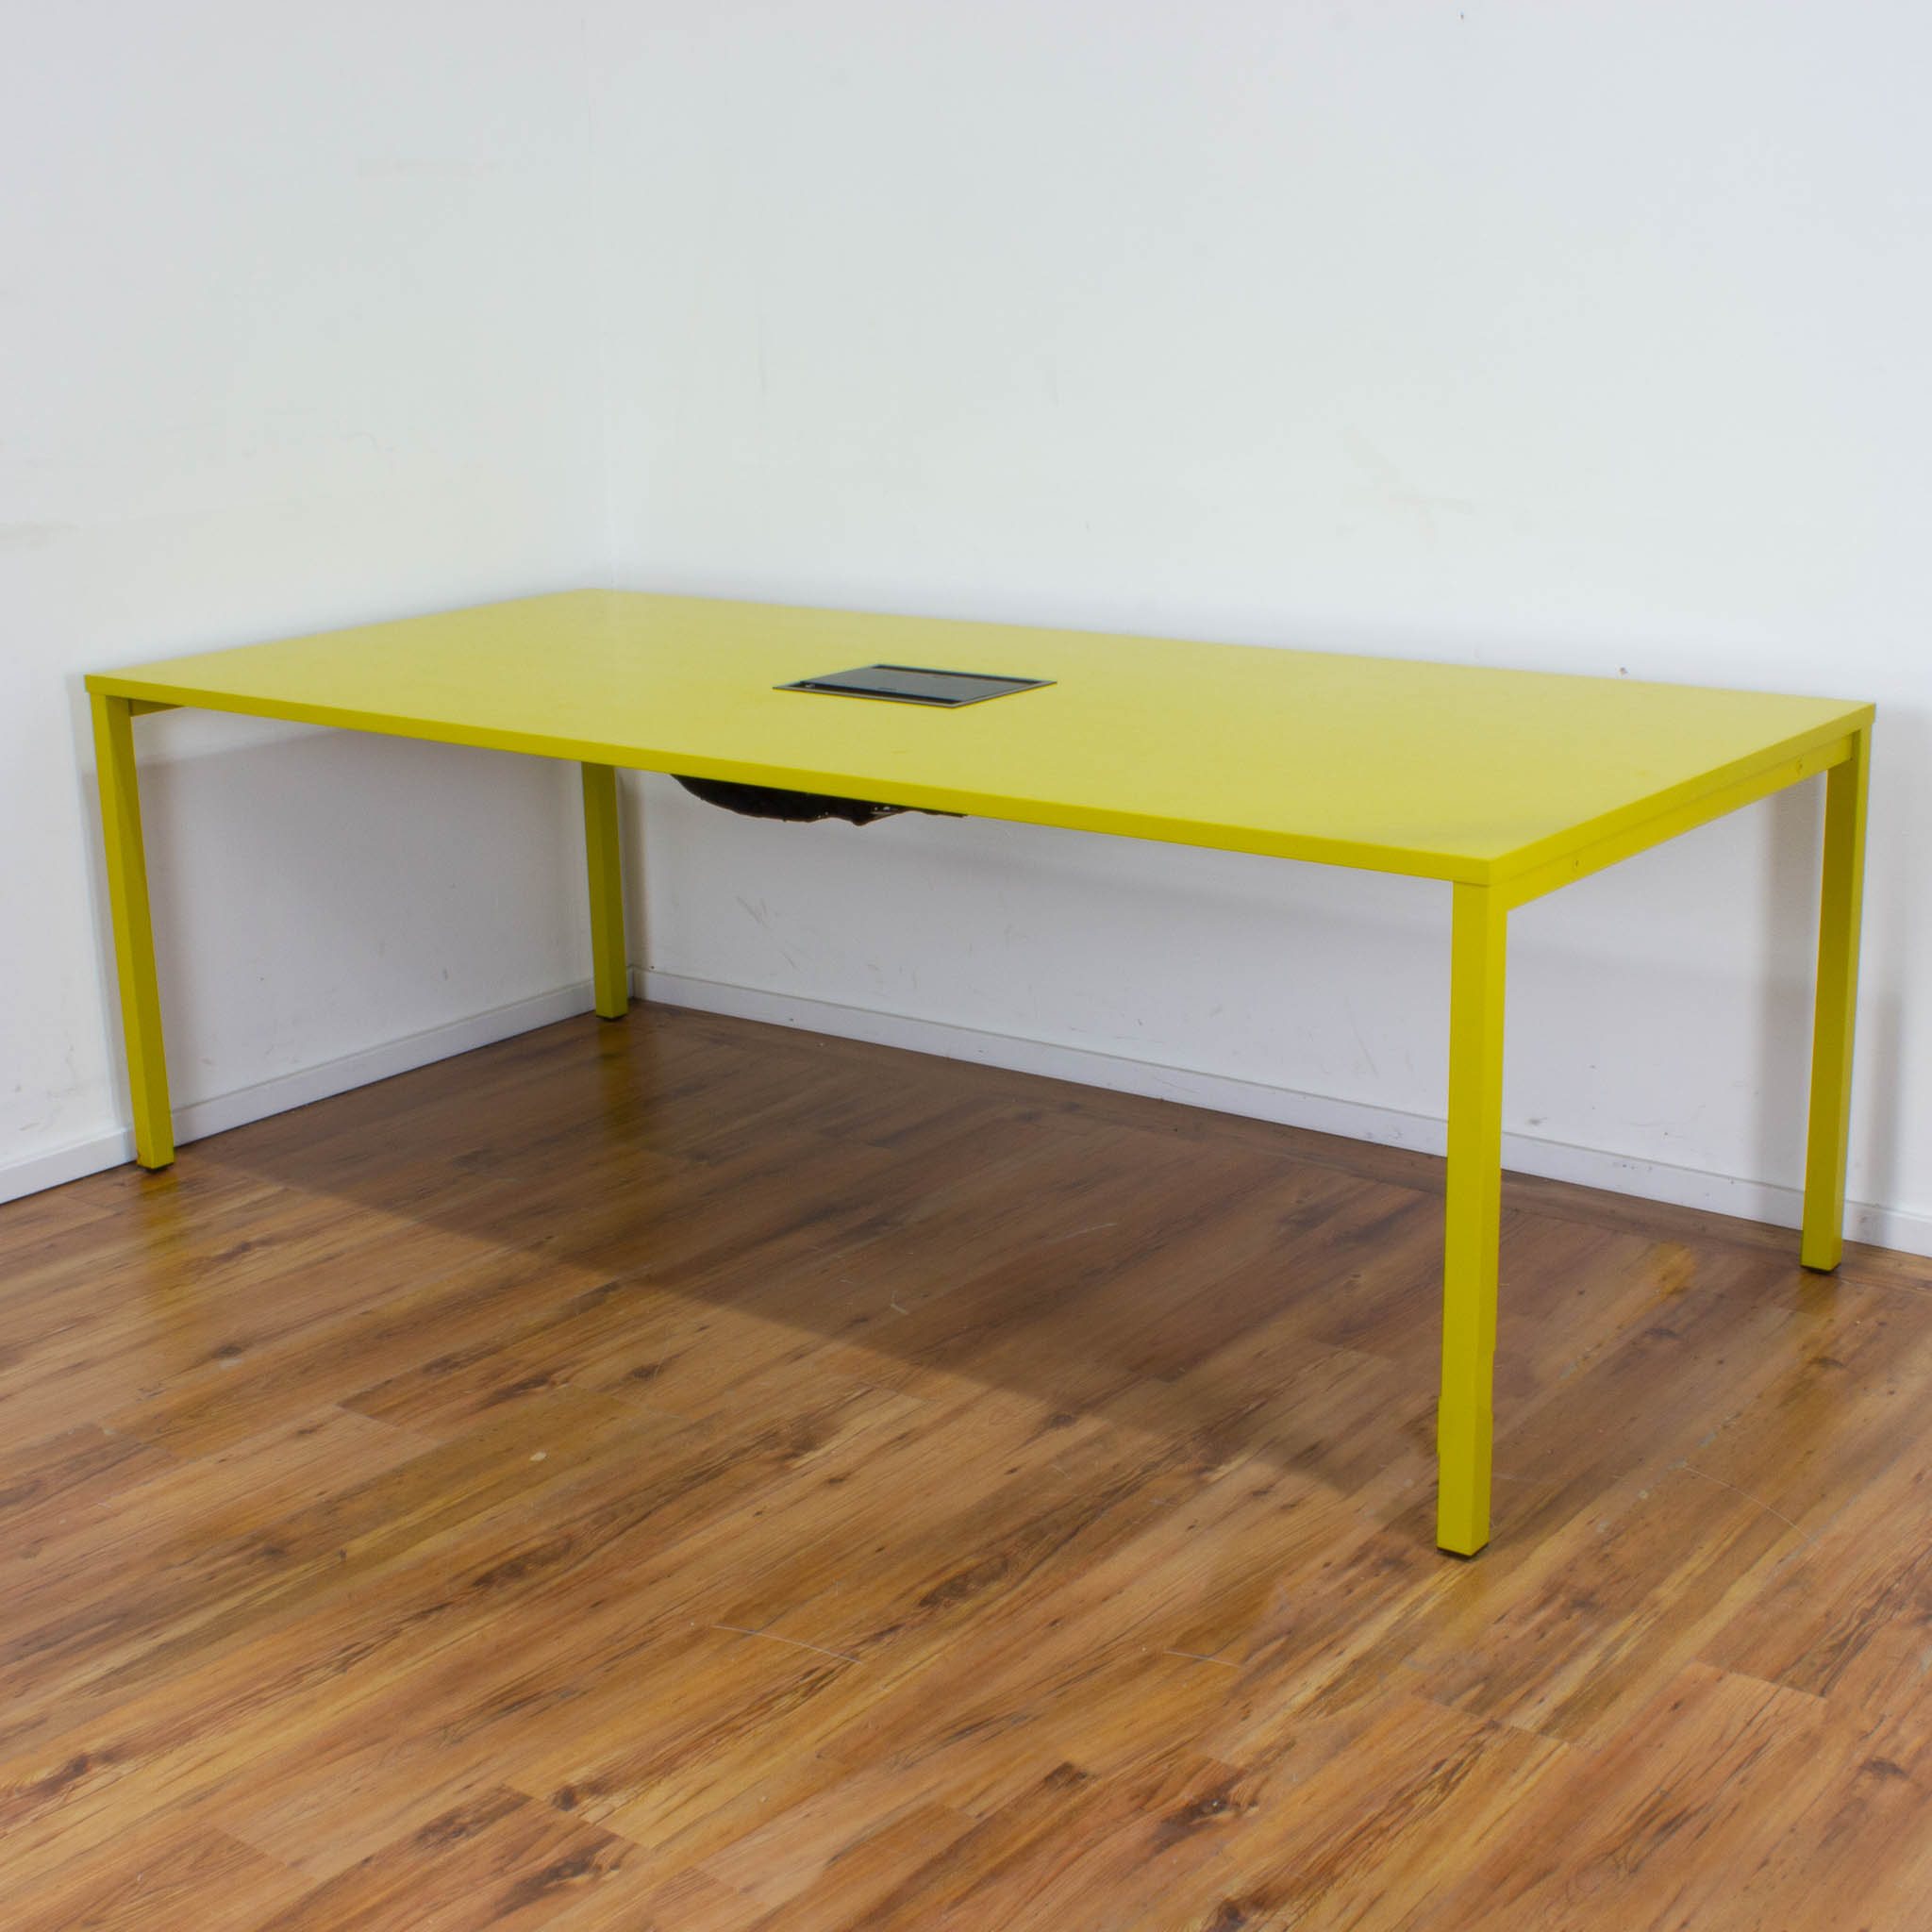 Konferenztisch mit Netzwerkport - 220 x 100 cm - gelb